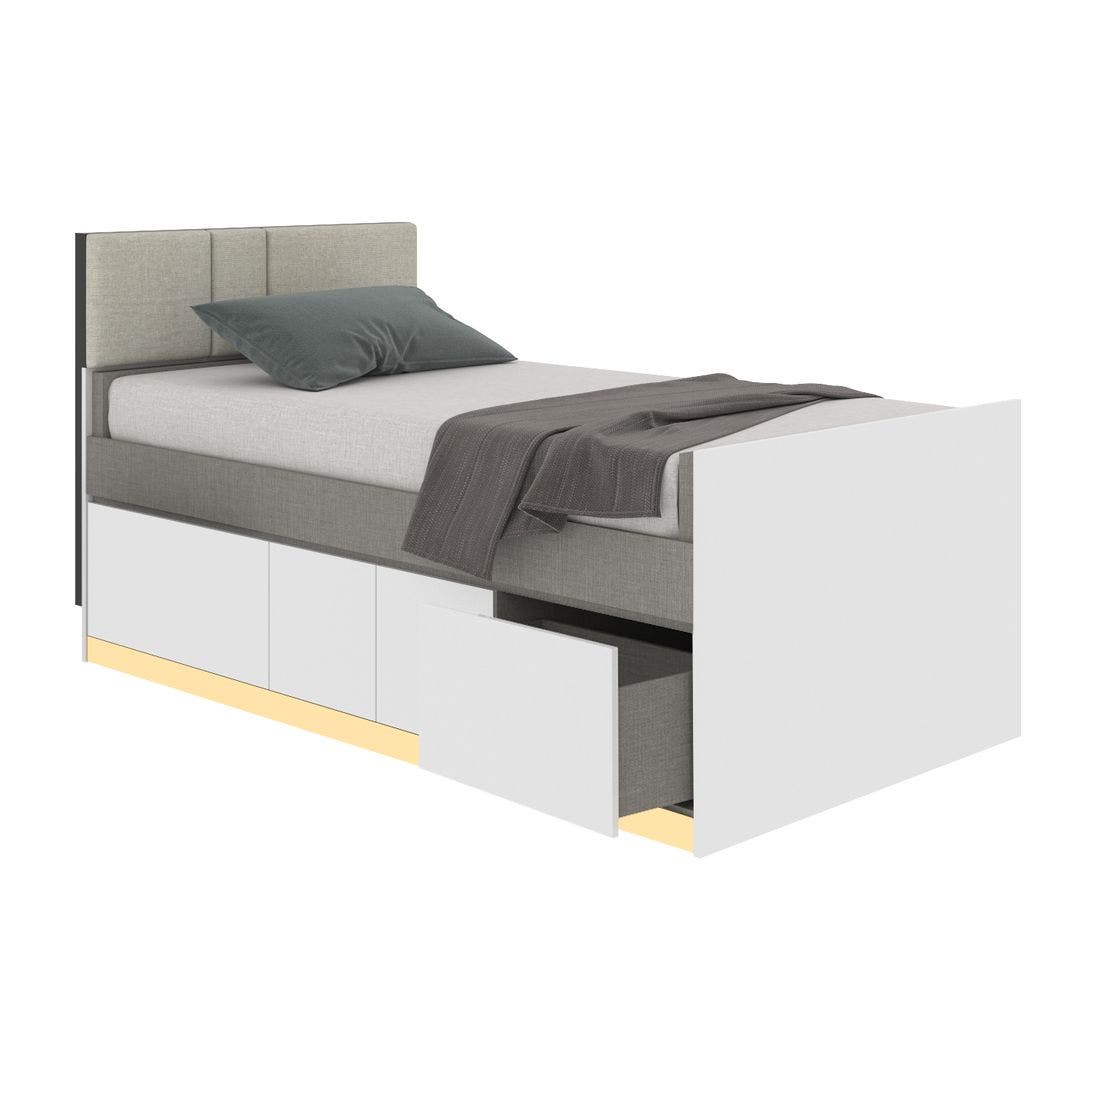 19203268-blisz-furniture-bedroom-furniture-beds-06